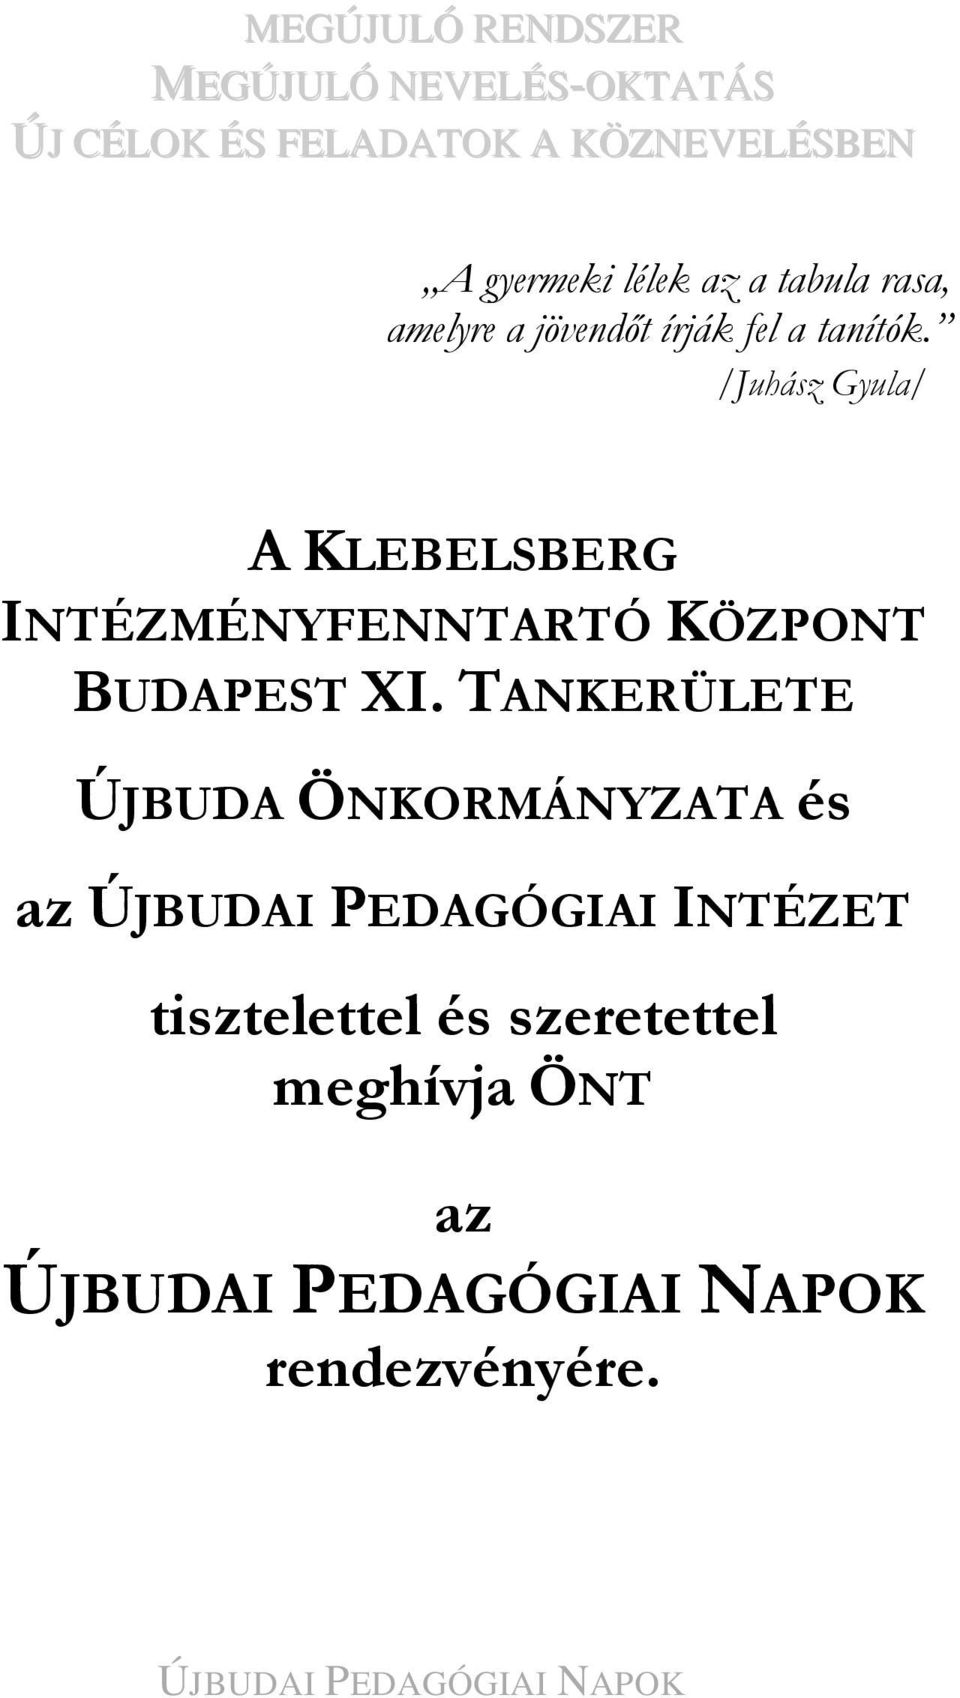 /Juhász Gyula/ A KLEBELSBERG INTÉZMÉNYFENNTARTÓ KÖZPONT BUDAPEST